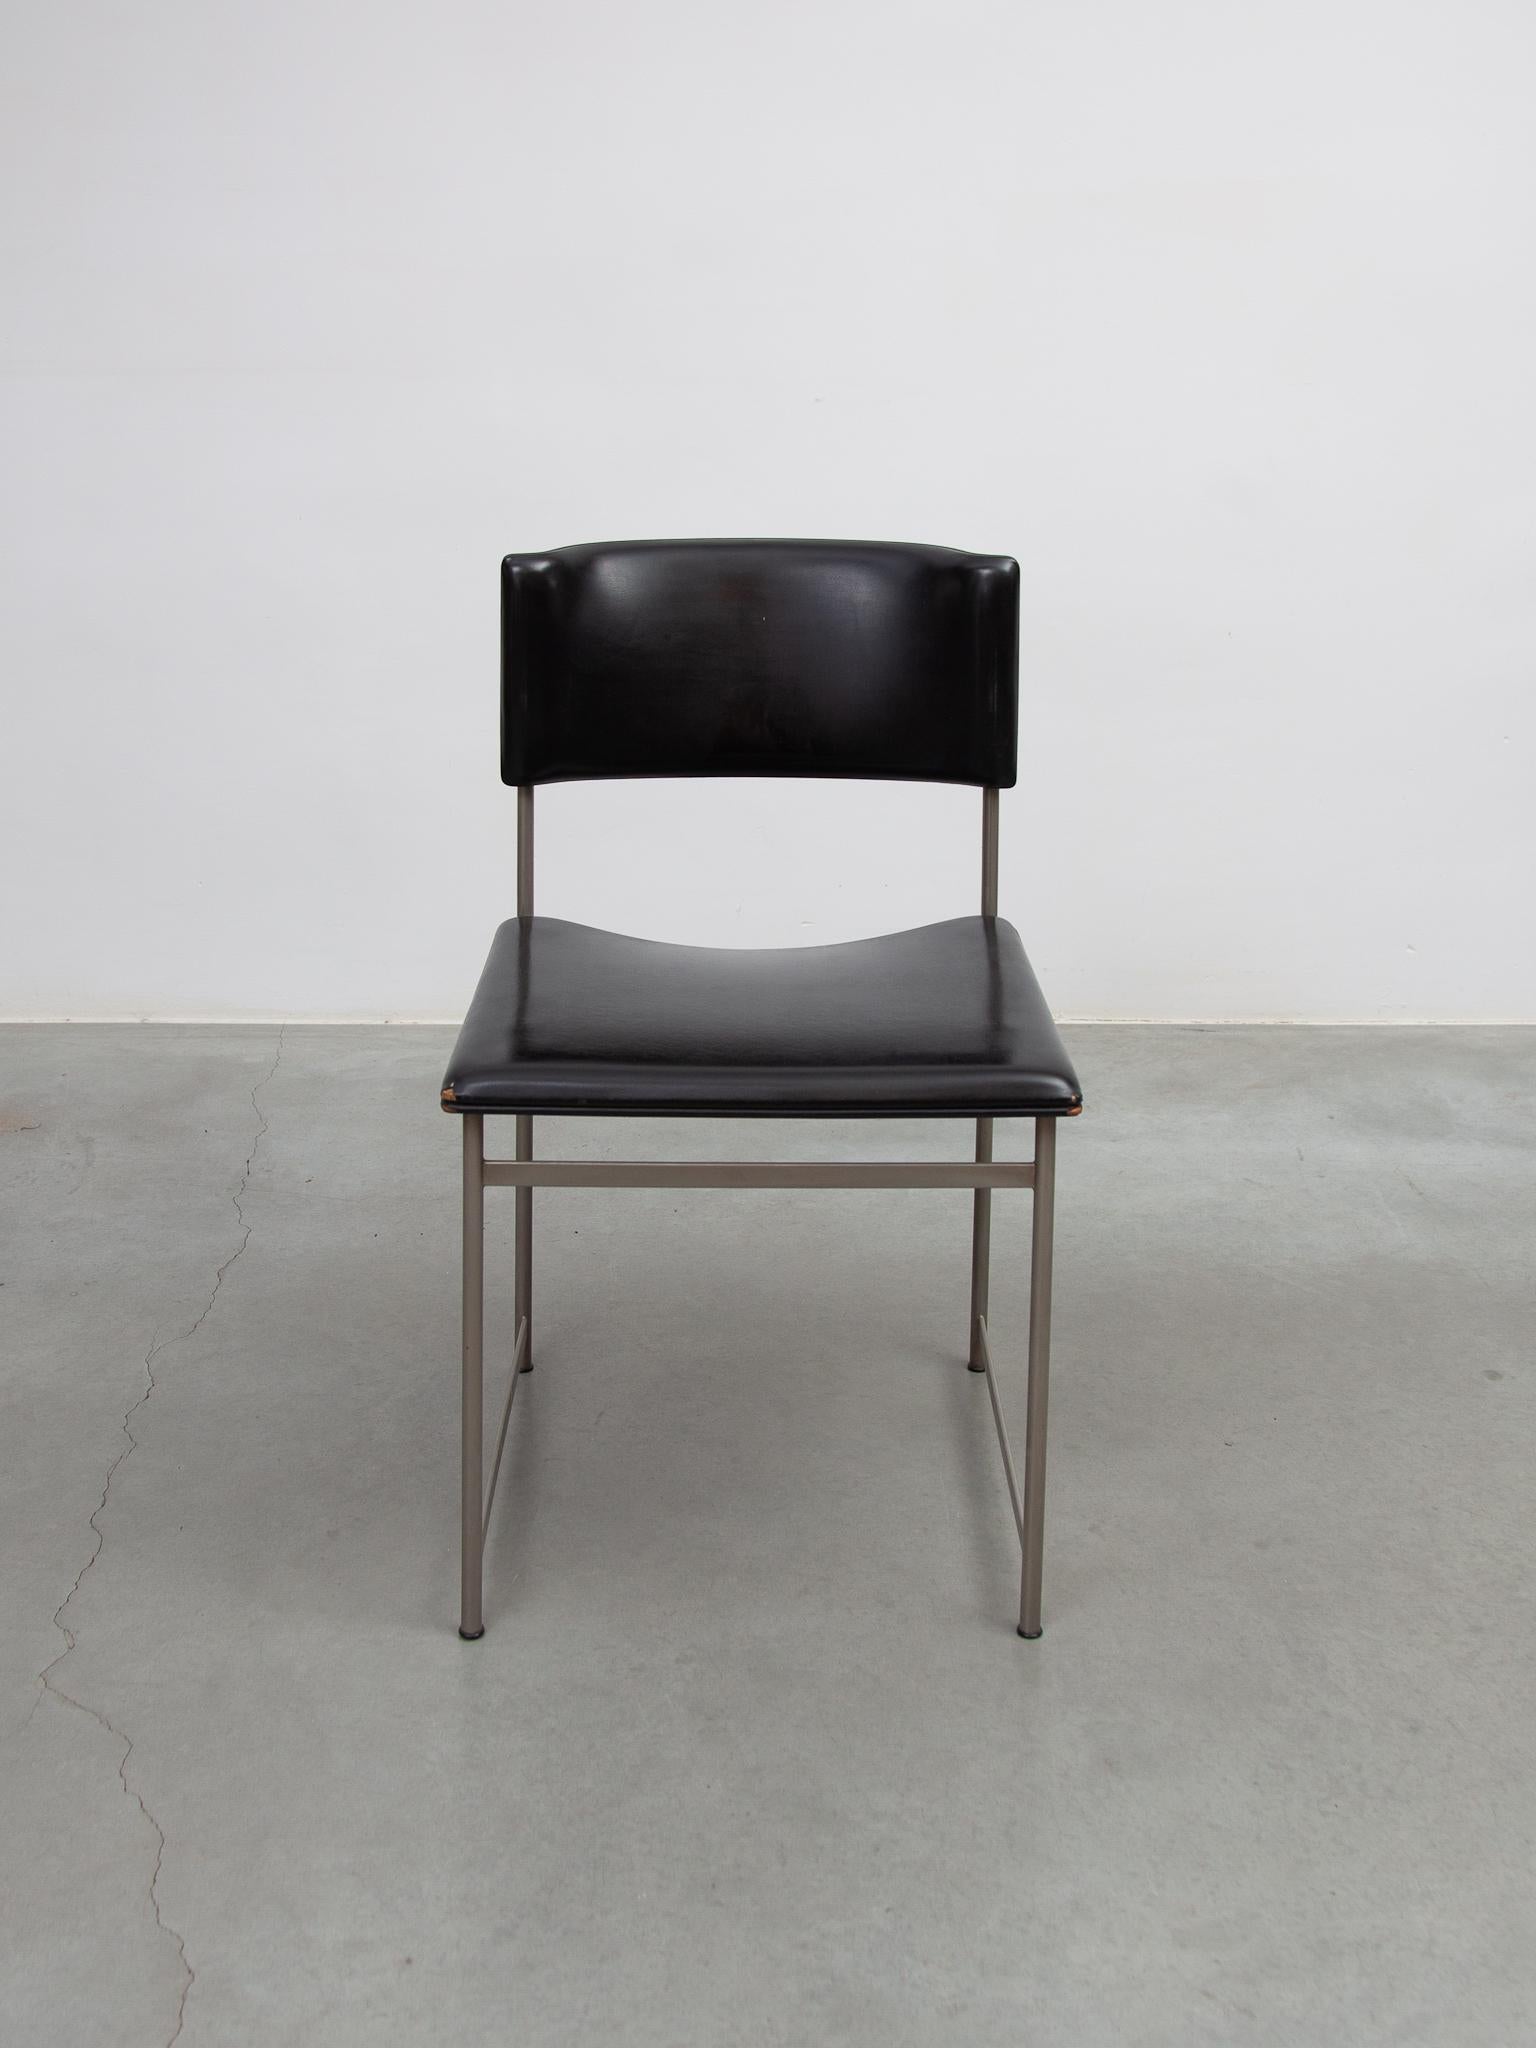 Bellissimo set vintage di sei sedie da pranzo SM08 in pelle nera disegnate da Cees Braakman per Pastoe, anni '50. In buone condizioni originali con alcuni segni d'uso.
Si tratta di una rara edizione di sedie da pranzo. Tutte le sedie presentano